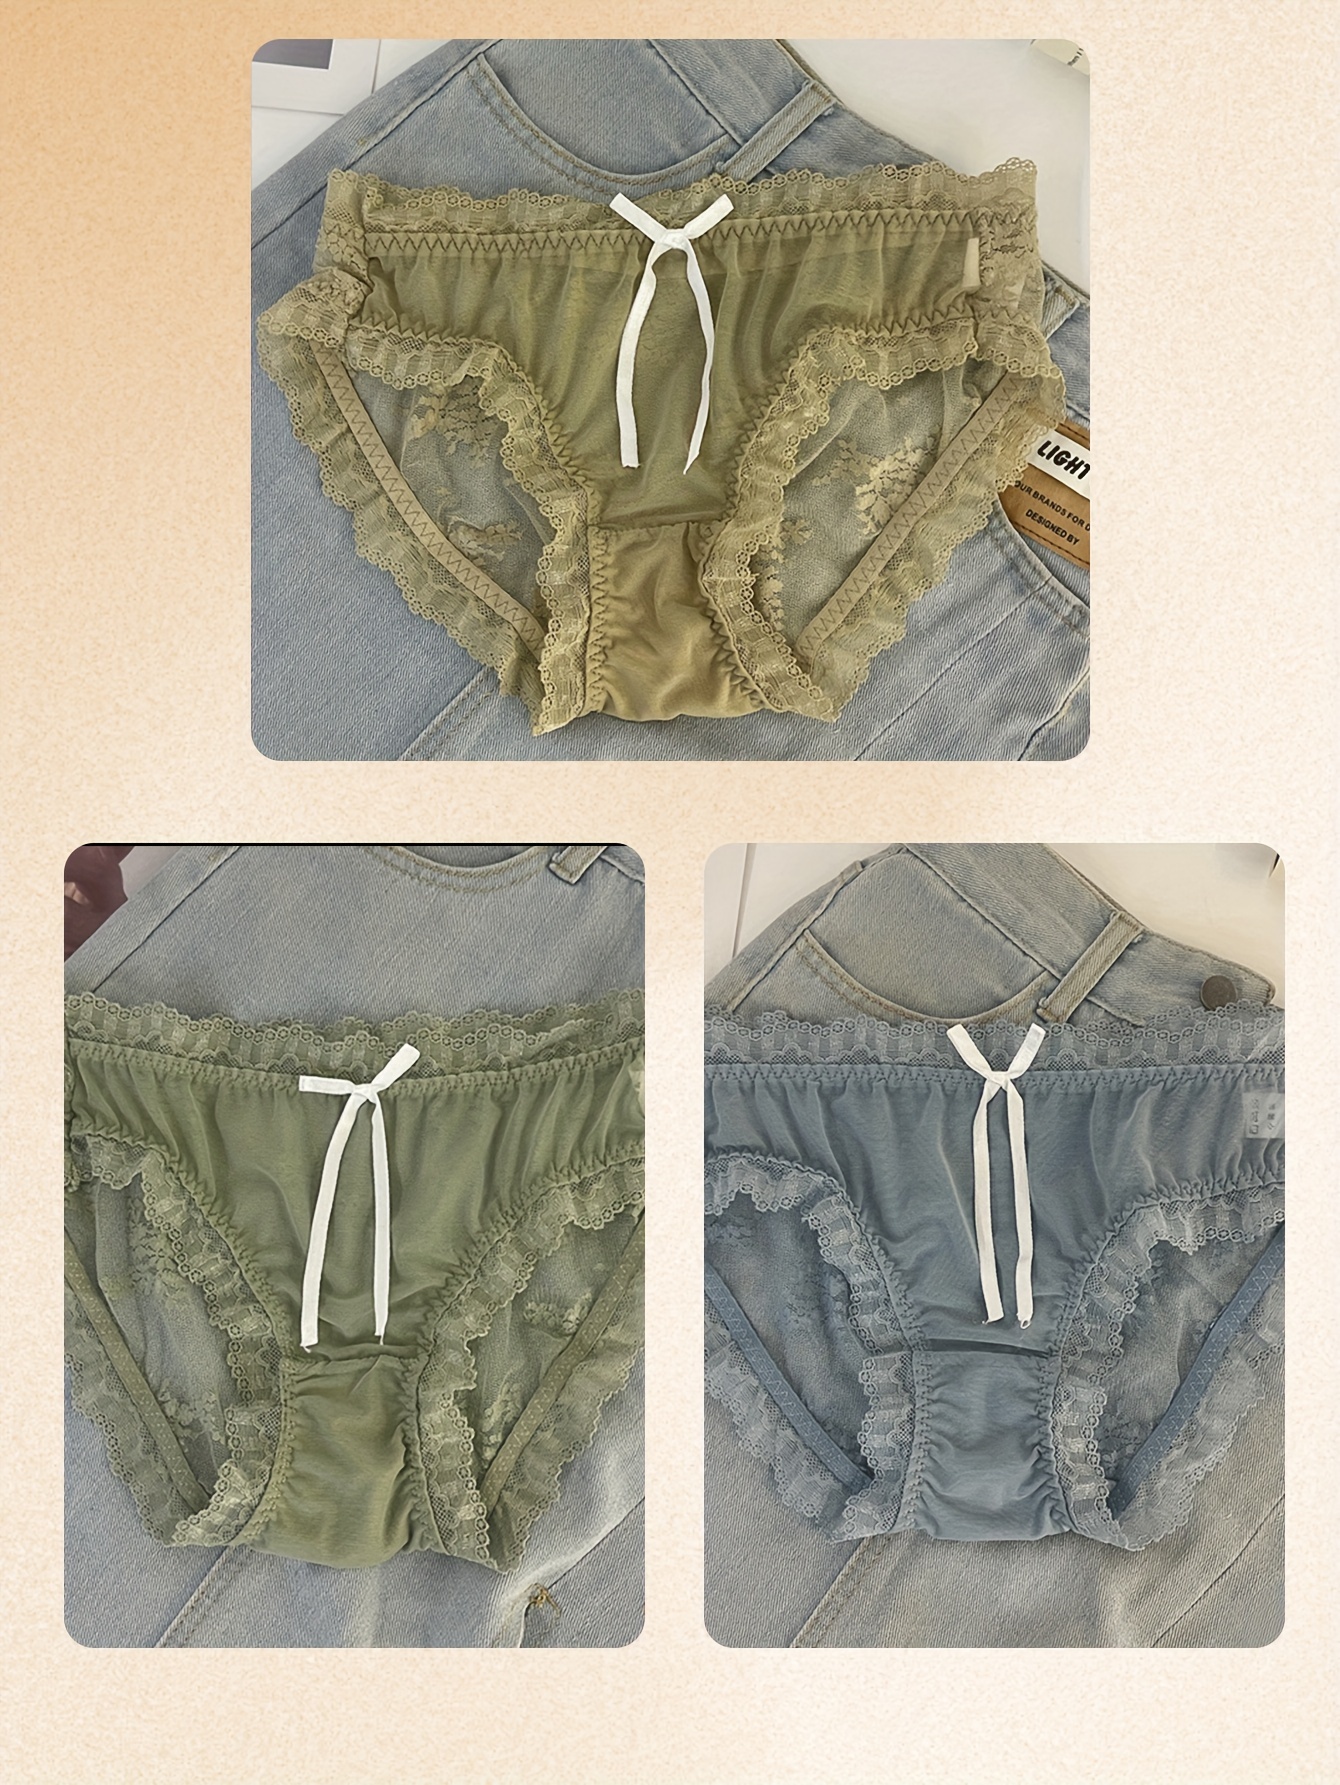 3pcs Contrast Lace Briefs, Soft & Comfy Scallop Trim Ribbed Panties,  Women's Lingerie & Underwear